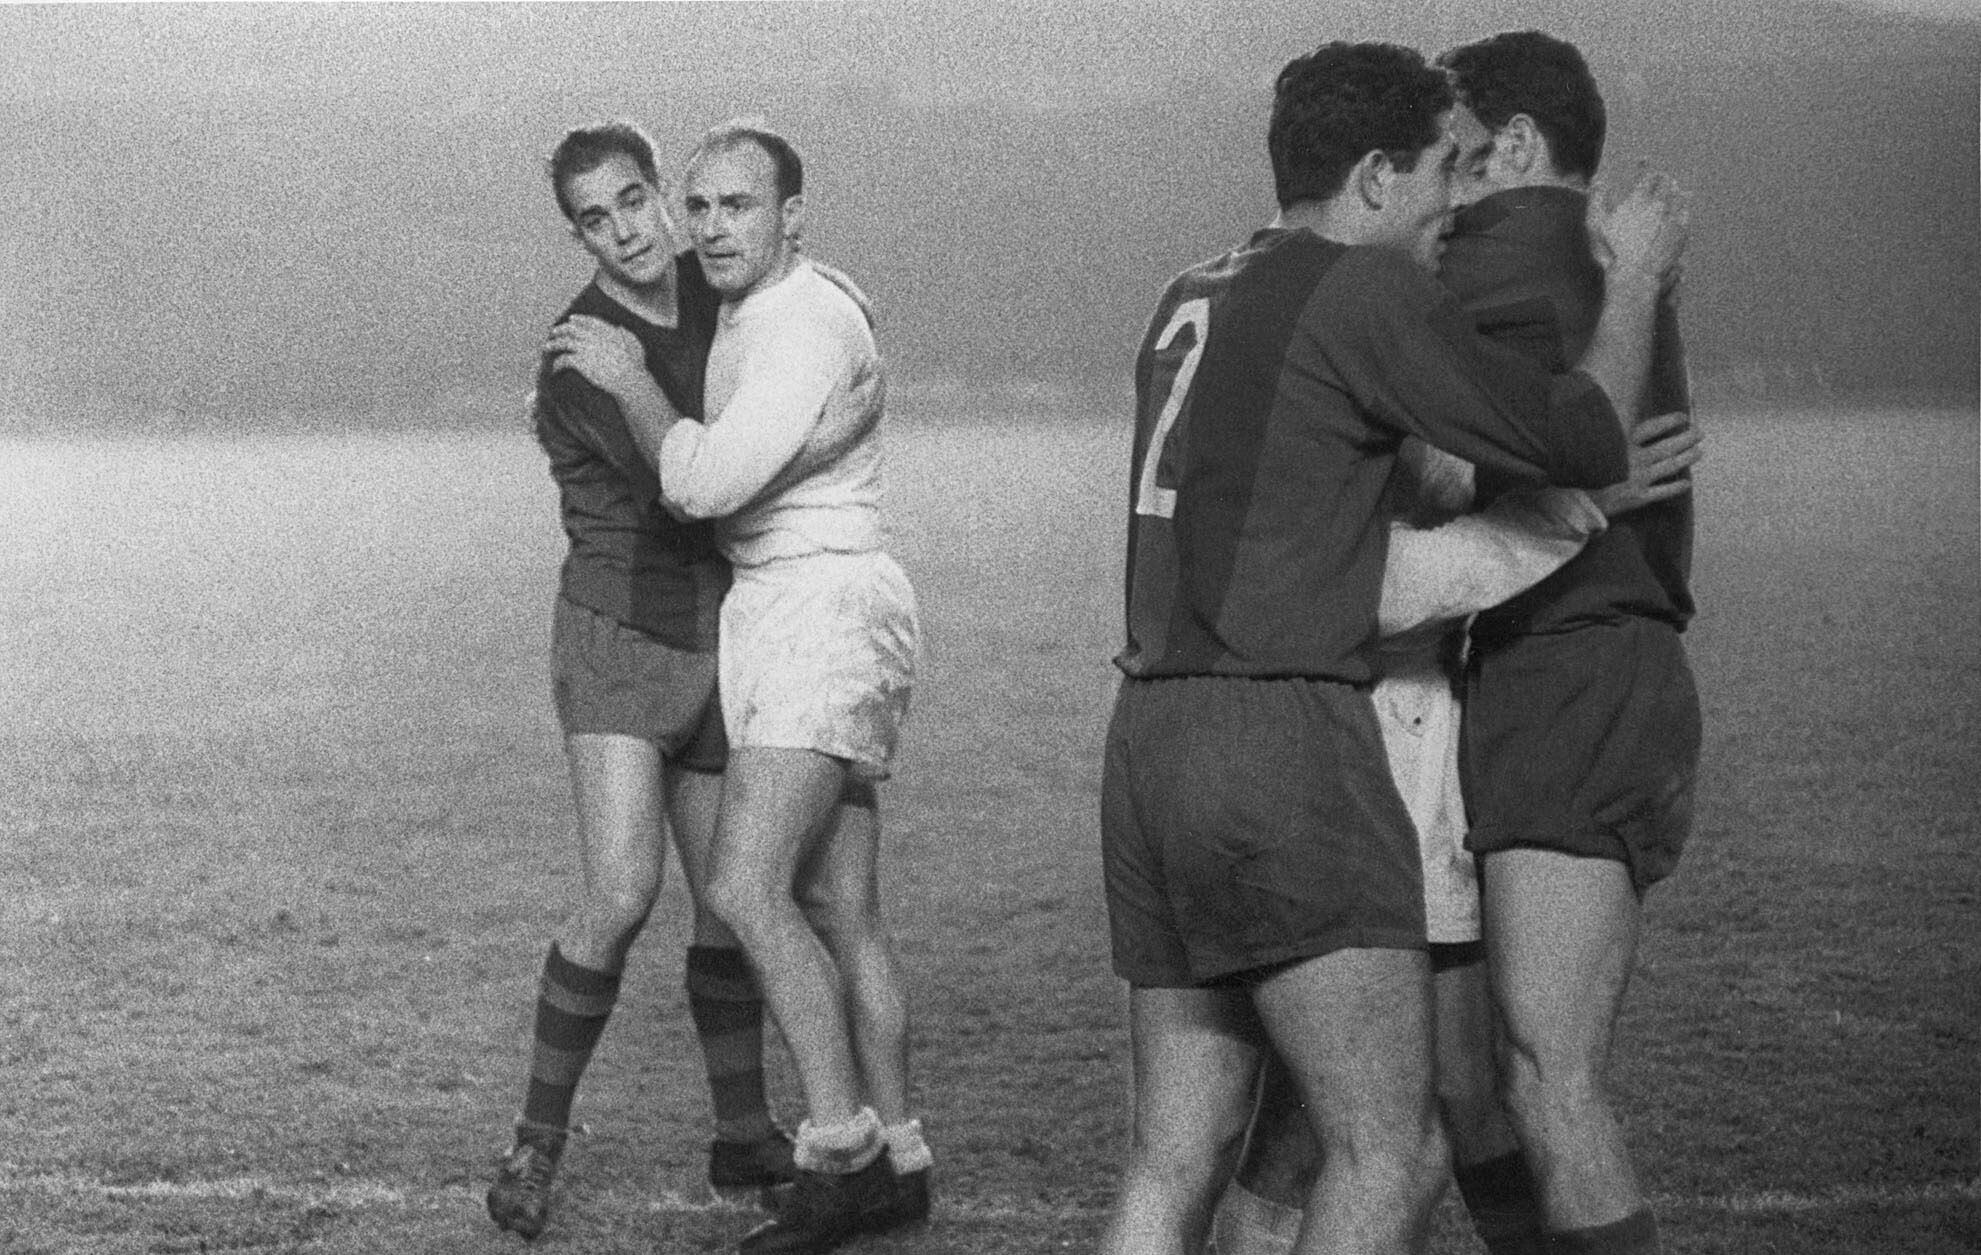 El jugador del Real Madrid, Di Stefano (2º izq), se abraza a Luis Suárez (i) del Barça, tras finalizar el partido de octavos de final de la Copa de Europa del año 1960. El encuentro disputado en el Nou Camp enfrentó al Real Madrid y Barcelona C.F, el 23 de noviembre.